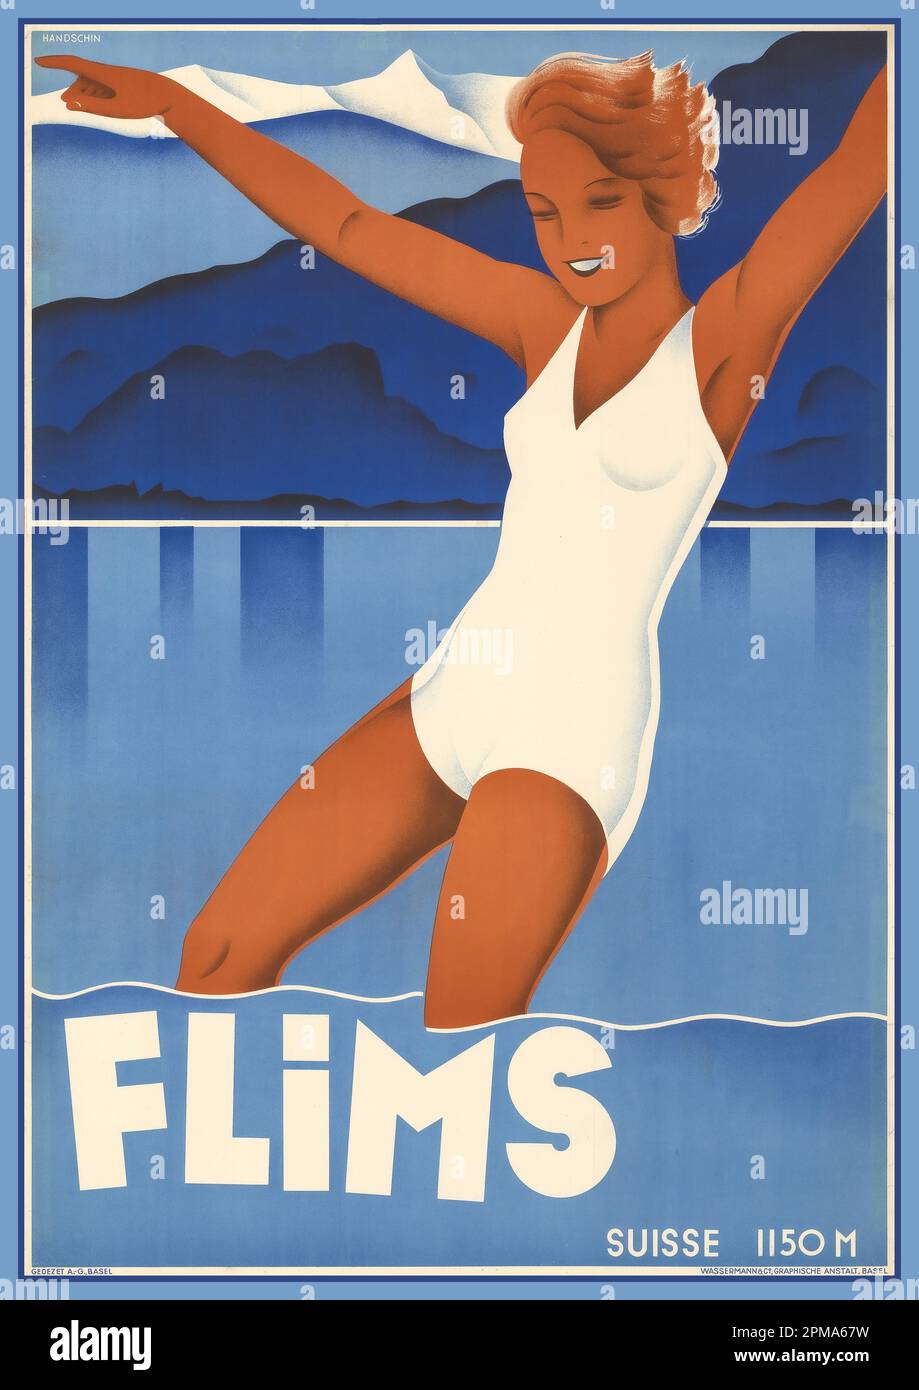 FLIMMS 1930s SVIZZERA Vintage 1930s Travel Poster Suisse 'FLIMMS' 1150M Graubunden Switzerland 1939 artista Johannes Handschin (1899–1948) Foto Stock